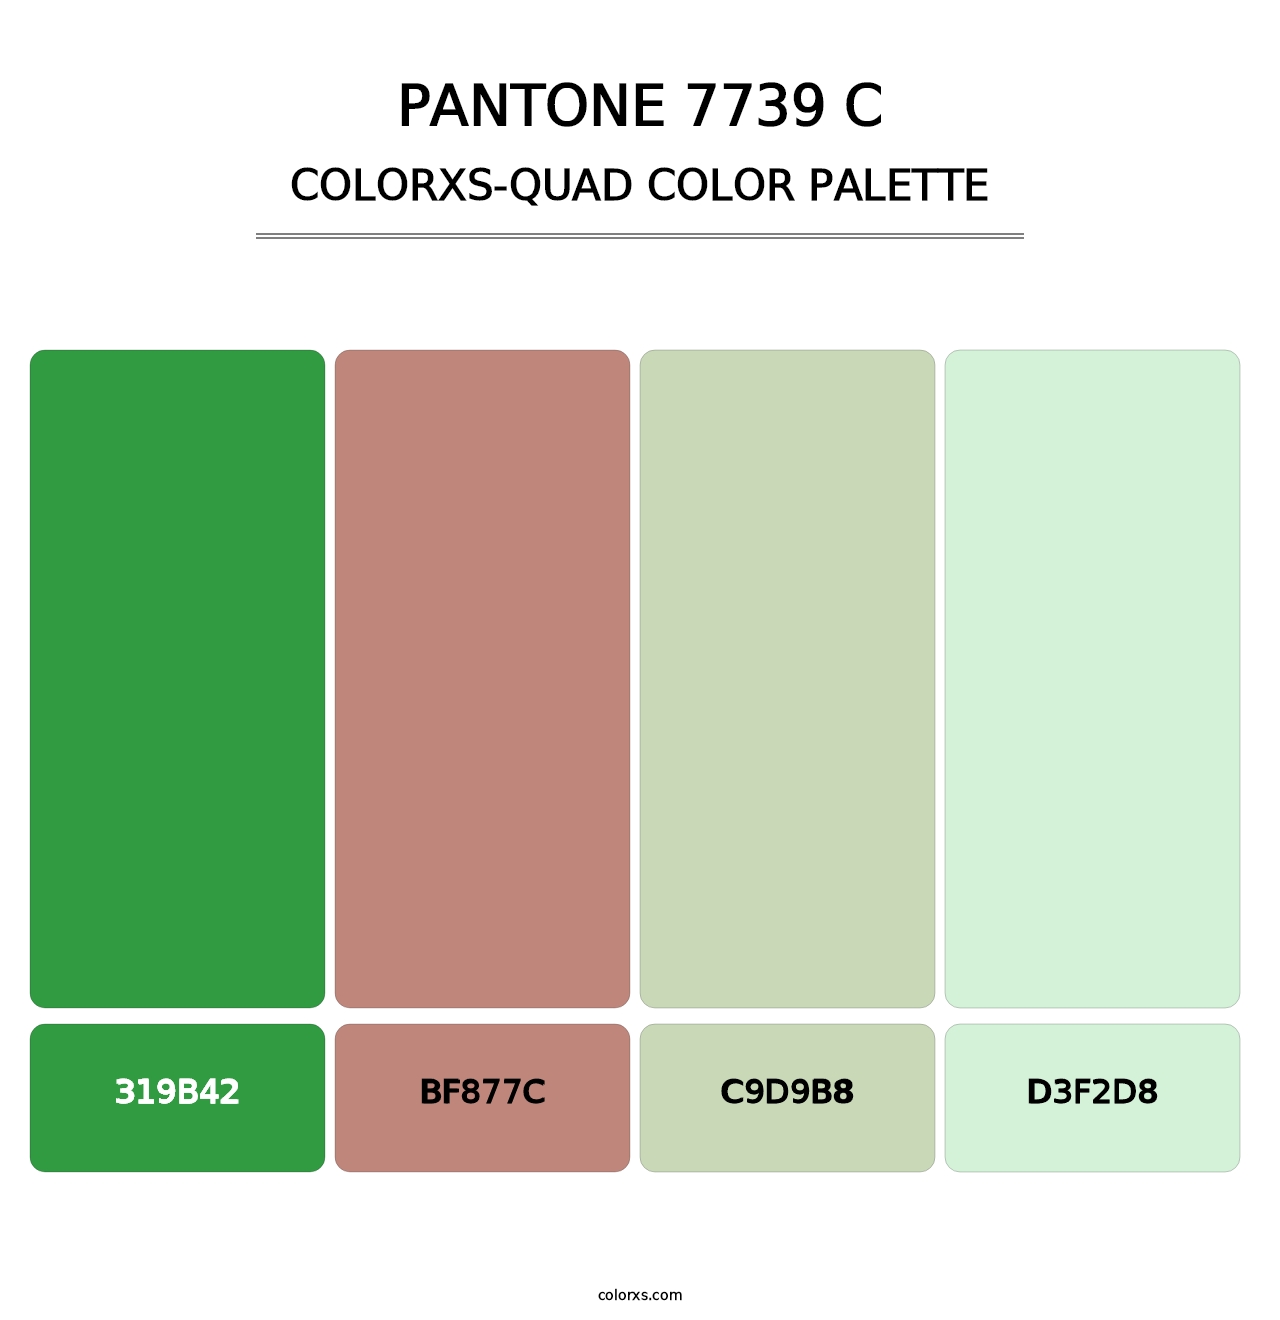 PANTONE 7739 C - Colorxs Quad Palette